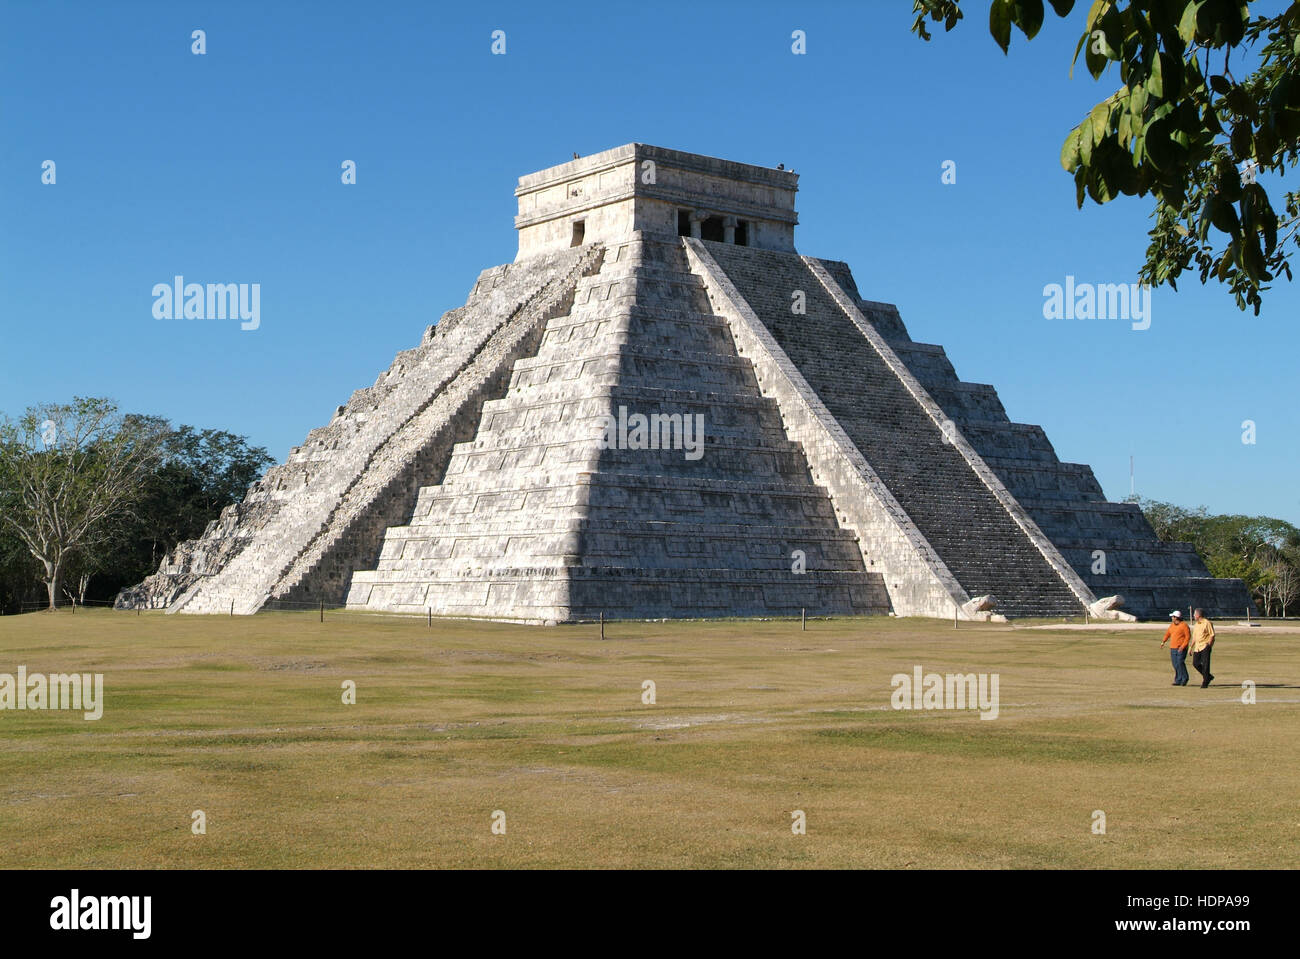 Chichen Itza, México - 24 de enero de 2009: Pirámide maya de Kukulcán El Castillo en Chichen Itza, México Foto de stock